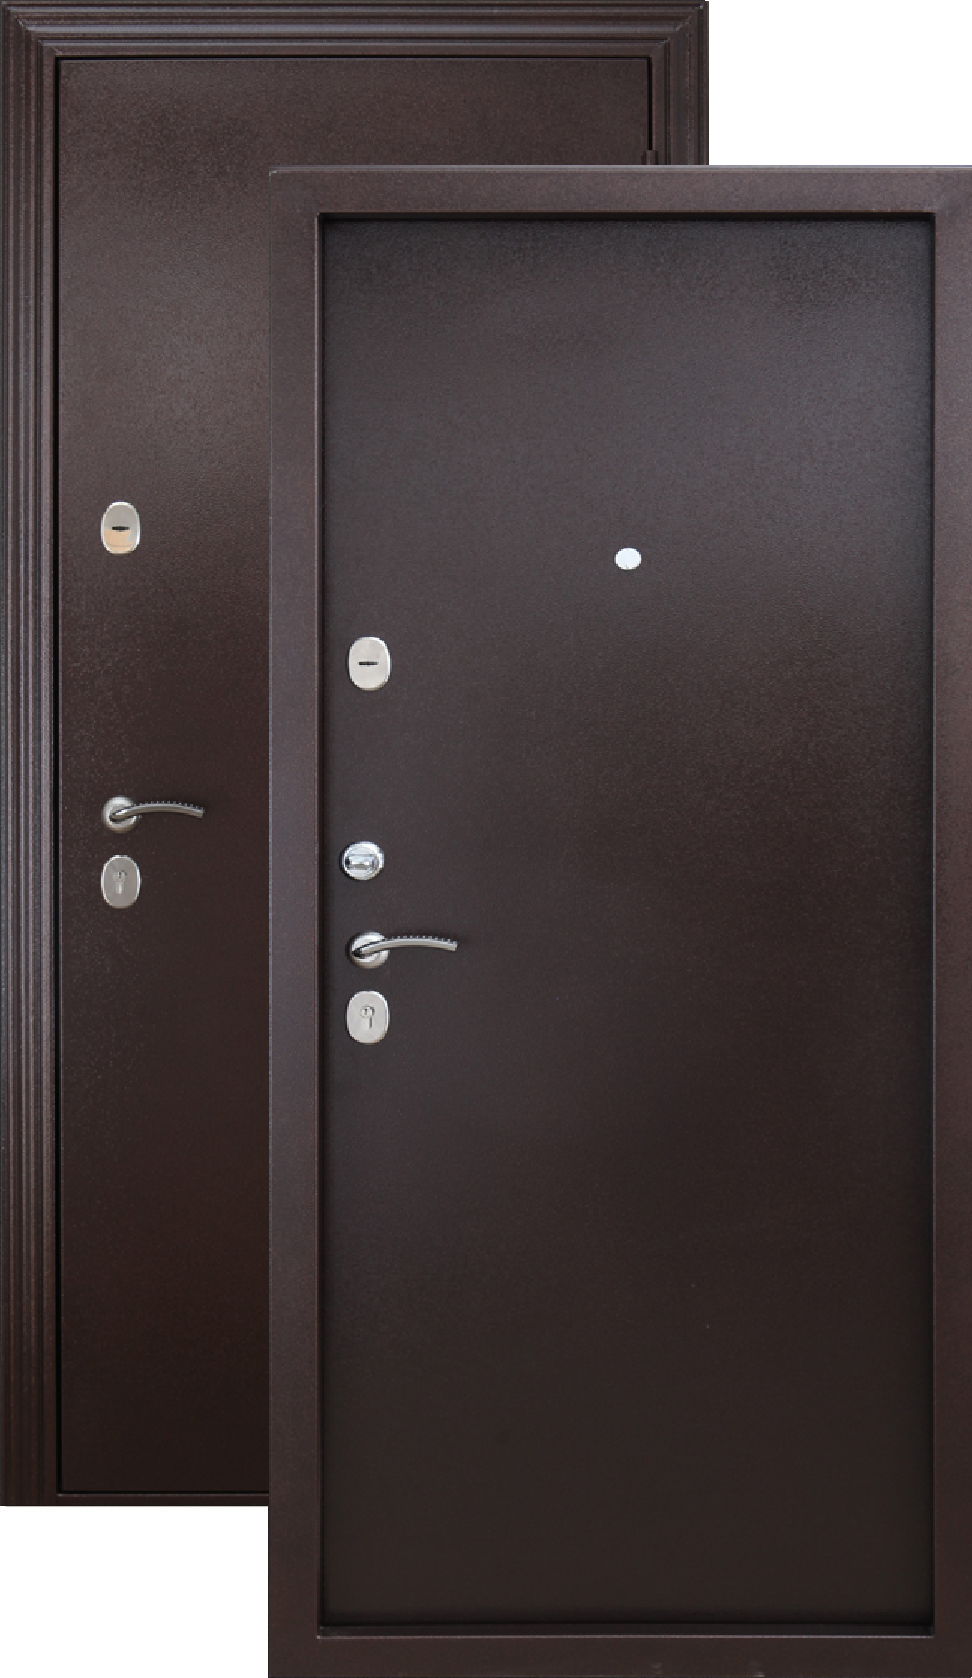 Дверь входная металлическая недорого б у. Дверь входная Гарда медный антик. Дверь Гарда металл/металл медный антик. Дверь металлическая 7,5см Гарда 960х2050мм металл/металл левая. Дверь металл Isoterma медный антик.